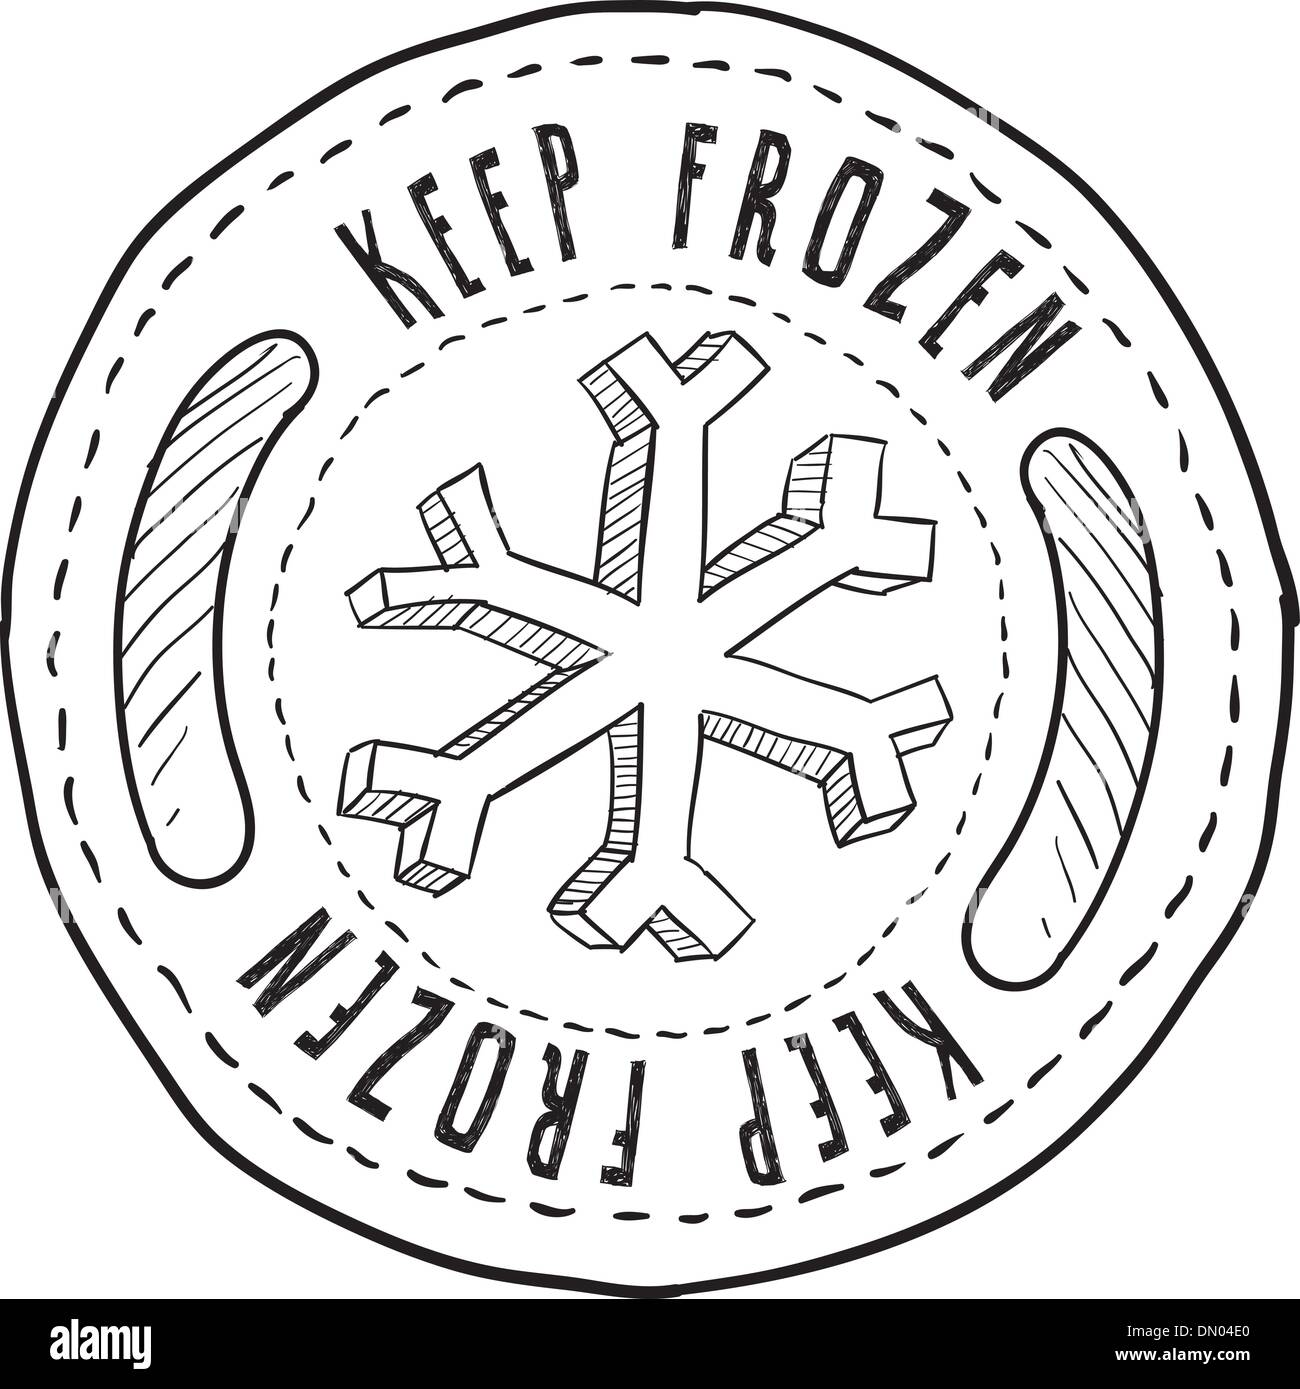 Keep frozen food label vector Stock Vector